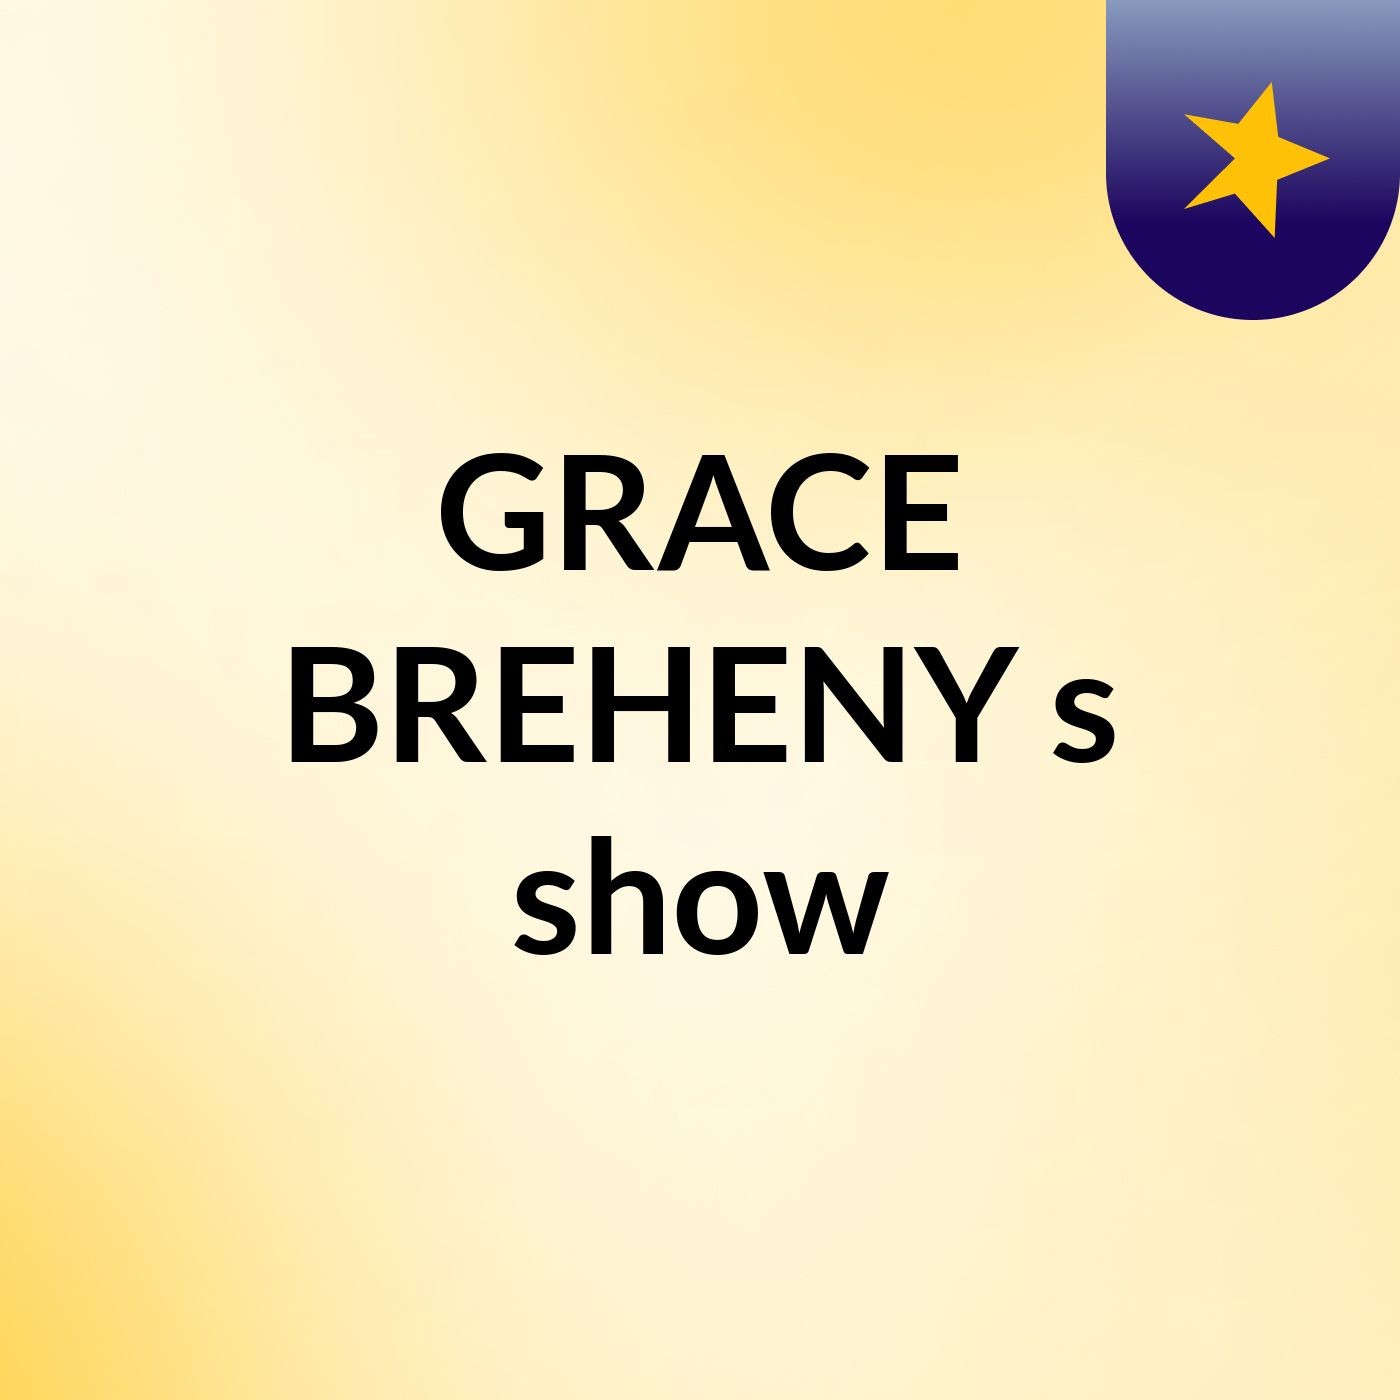 GRACE BREHENY's show